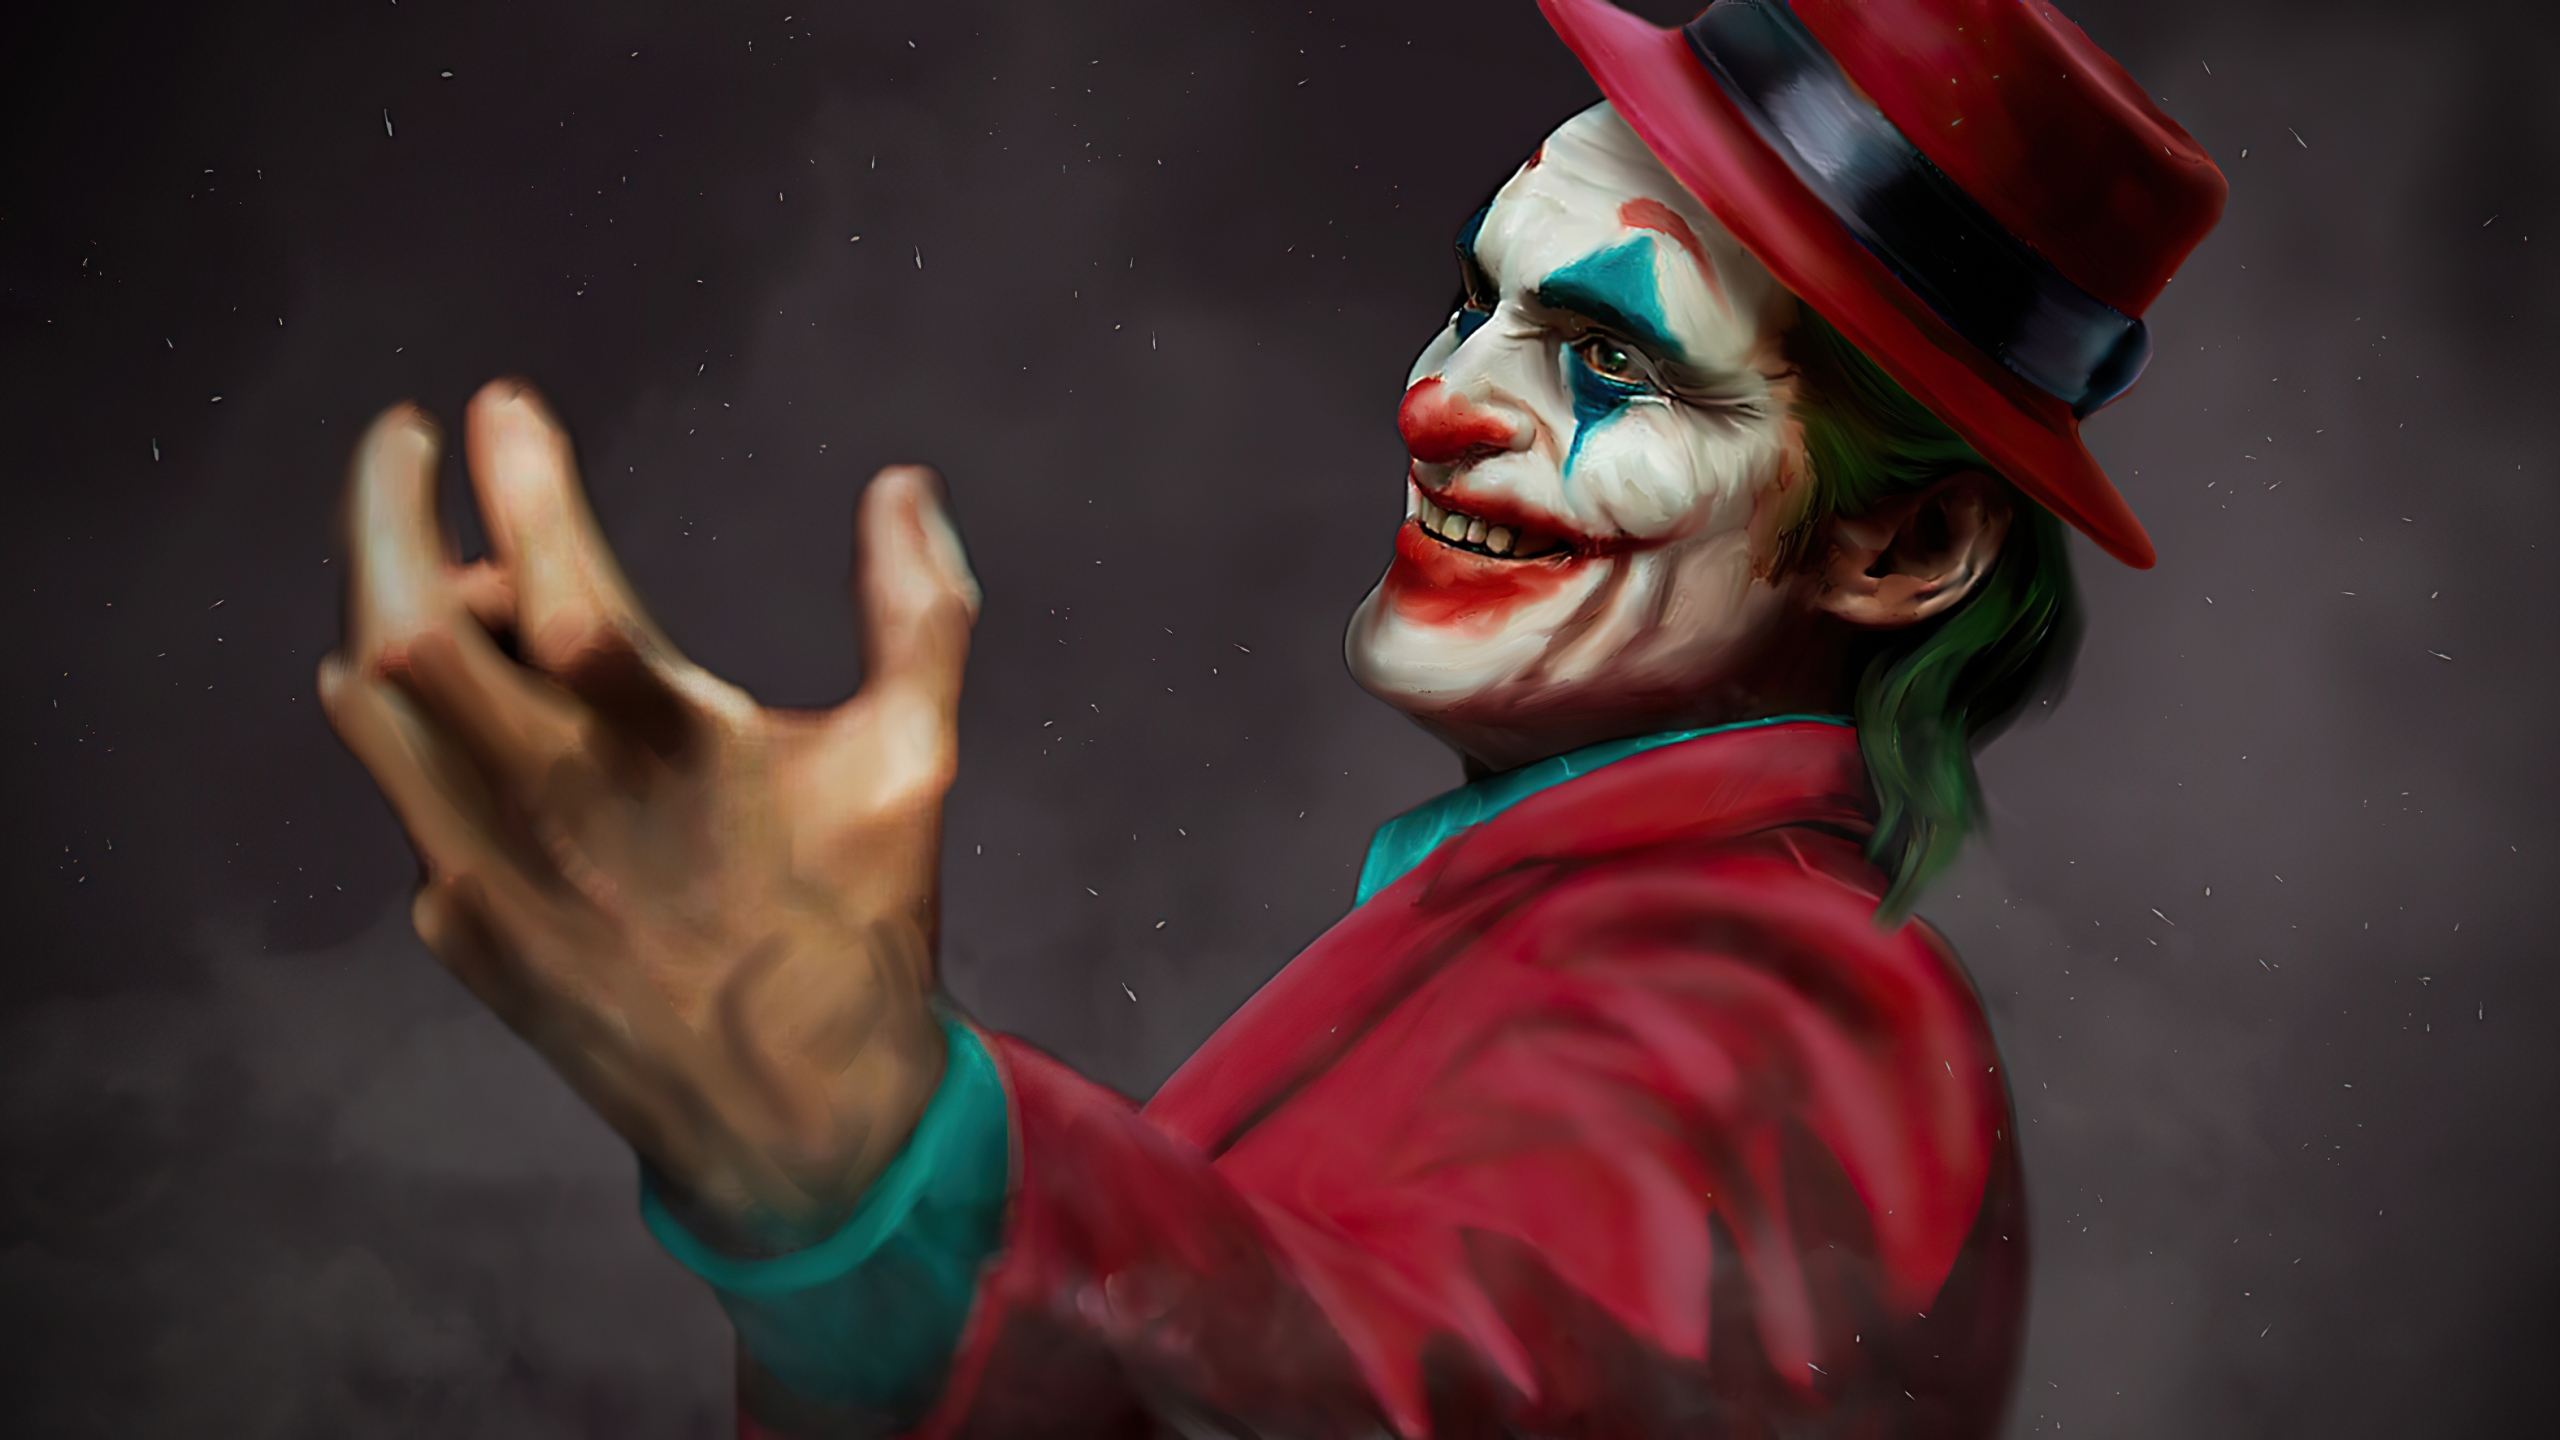 Joker with hat Wallpaper 4k Ultra HD ID:5738